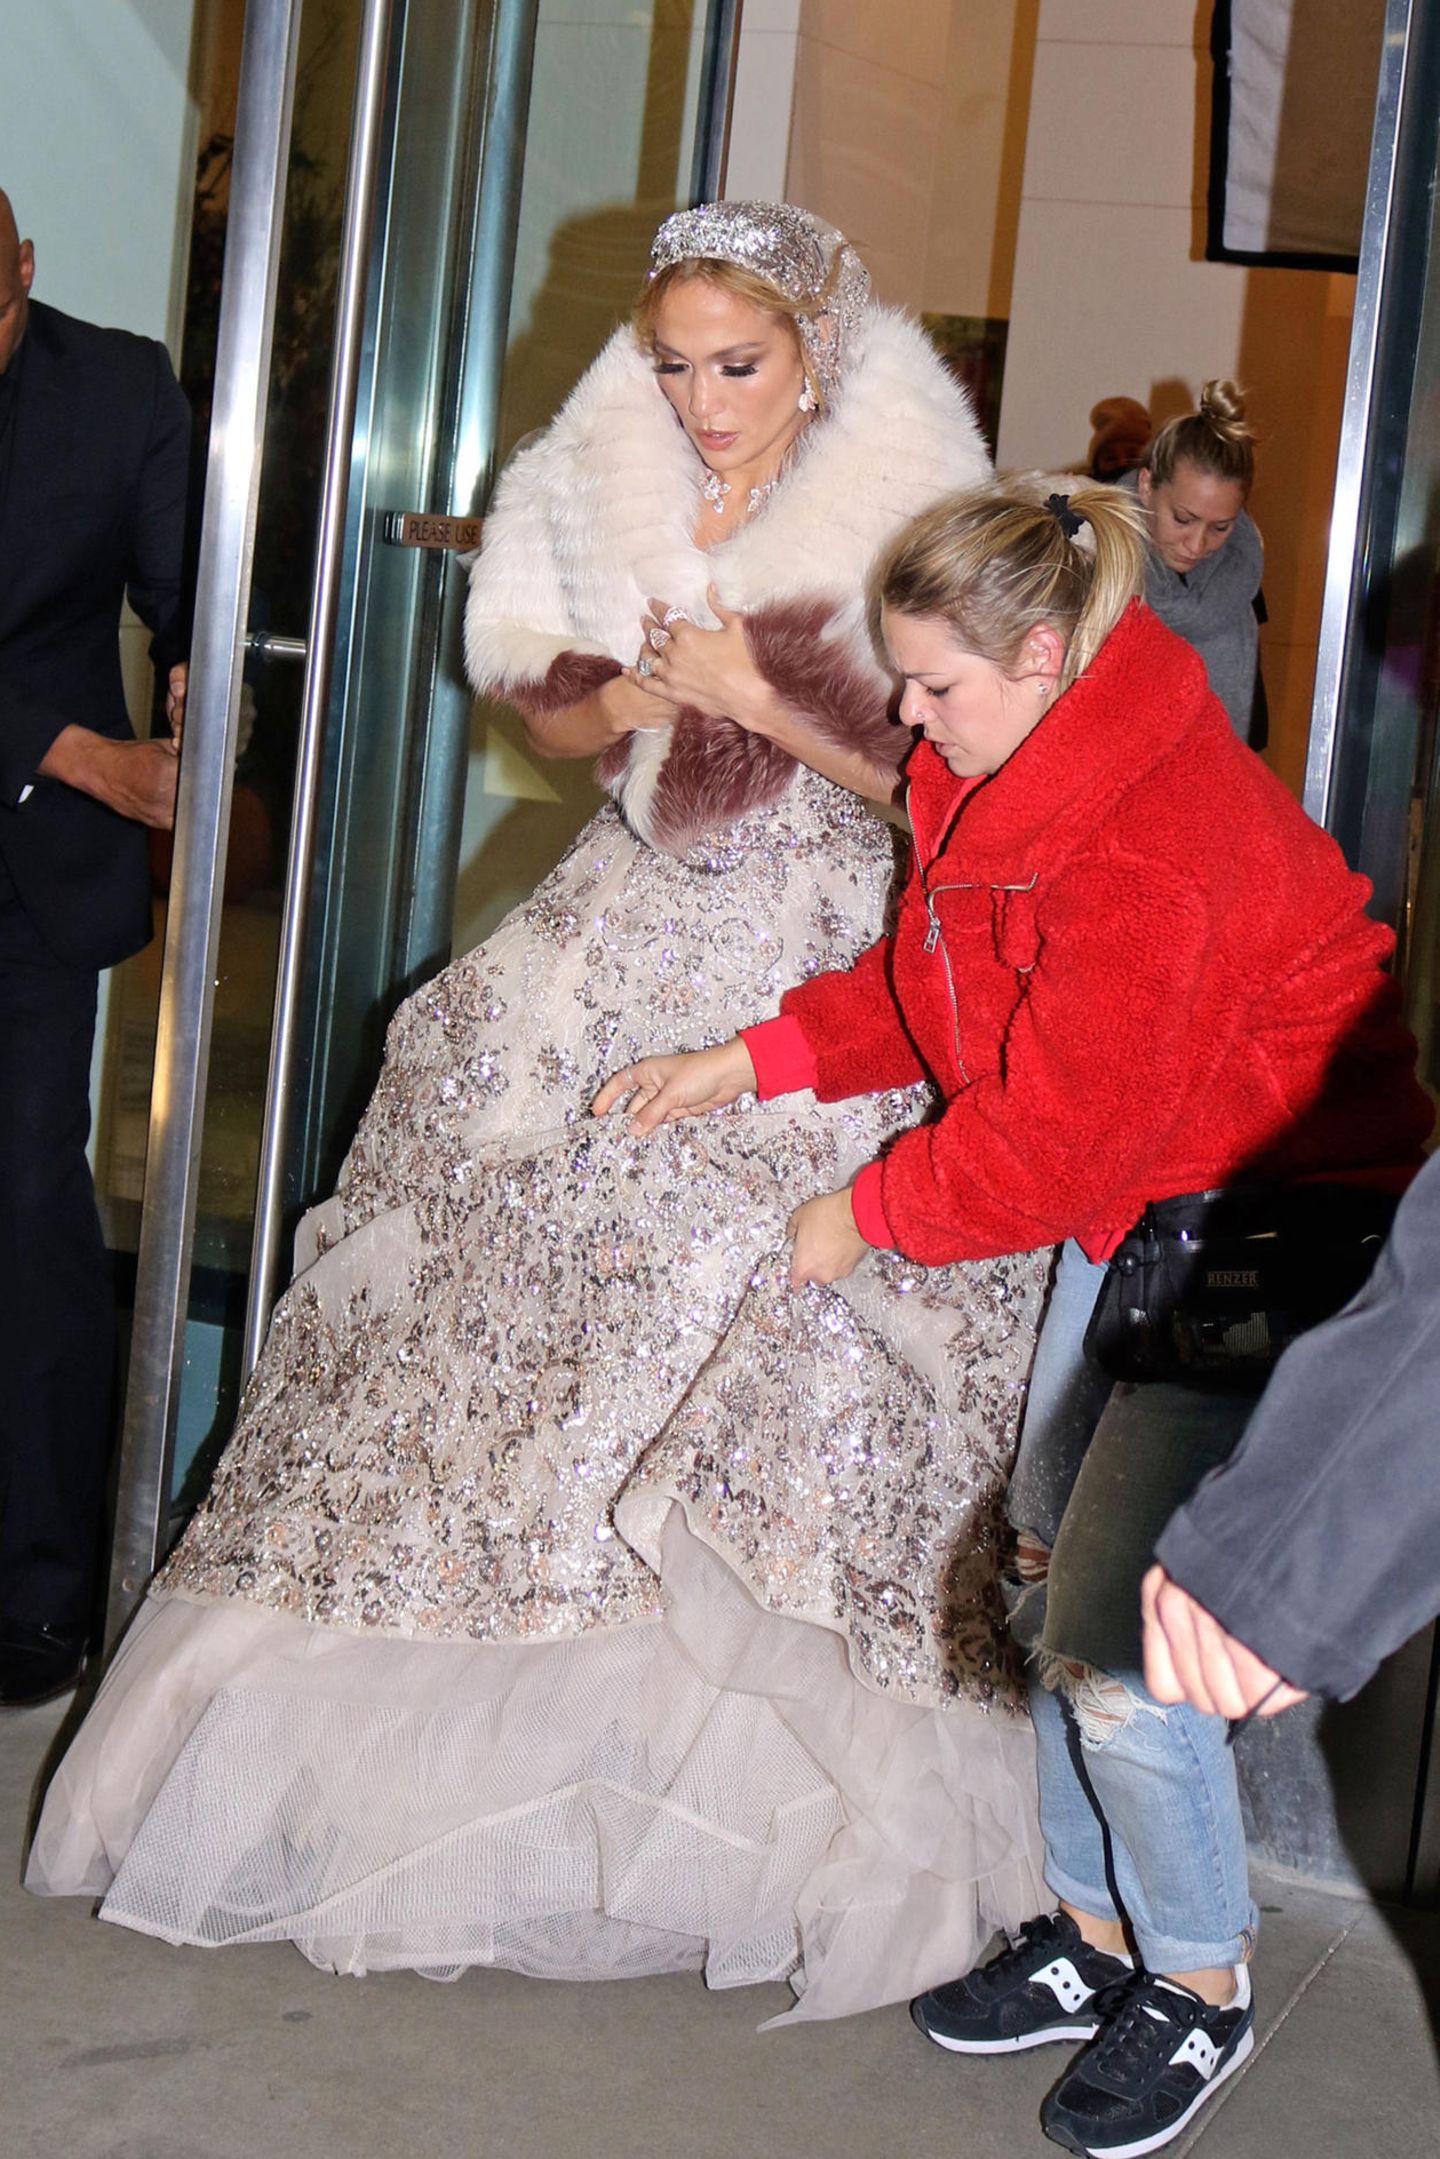 ... es ist Jennifer Lopez, die für ihren neuen Film "Marry Me" mit Owen Wilson und Maluma vor der Kamera steht. Das opulente Hochzeitskleid, mit traumhafter Schleppe und zahlreichen Glitzerapplikationen macht schon jetzt Lust auf die Rom-Com mit Superstar Jennifer Lopez.  